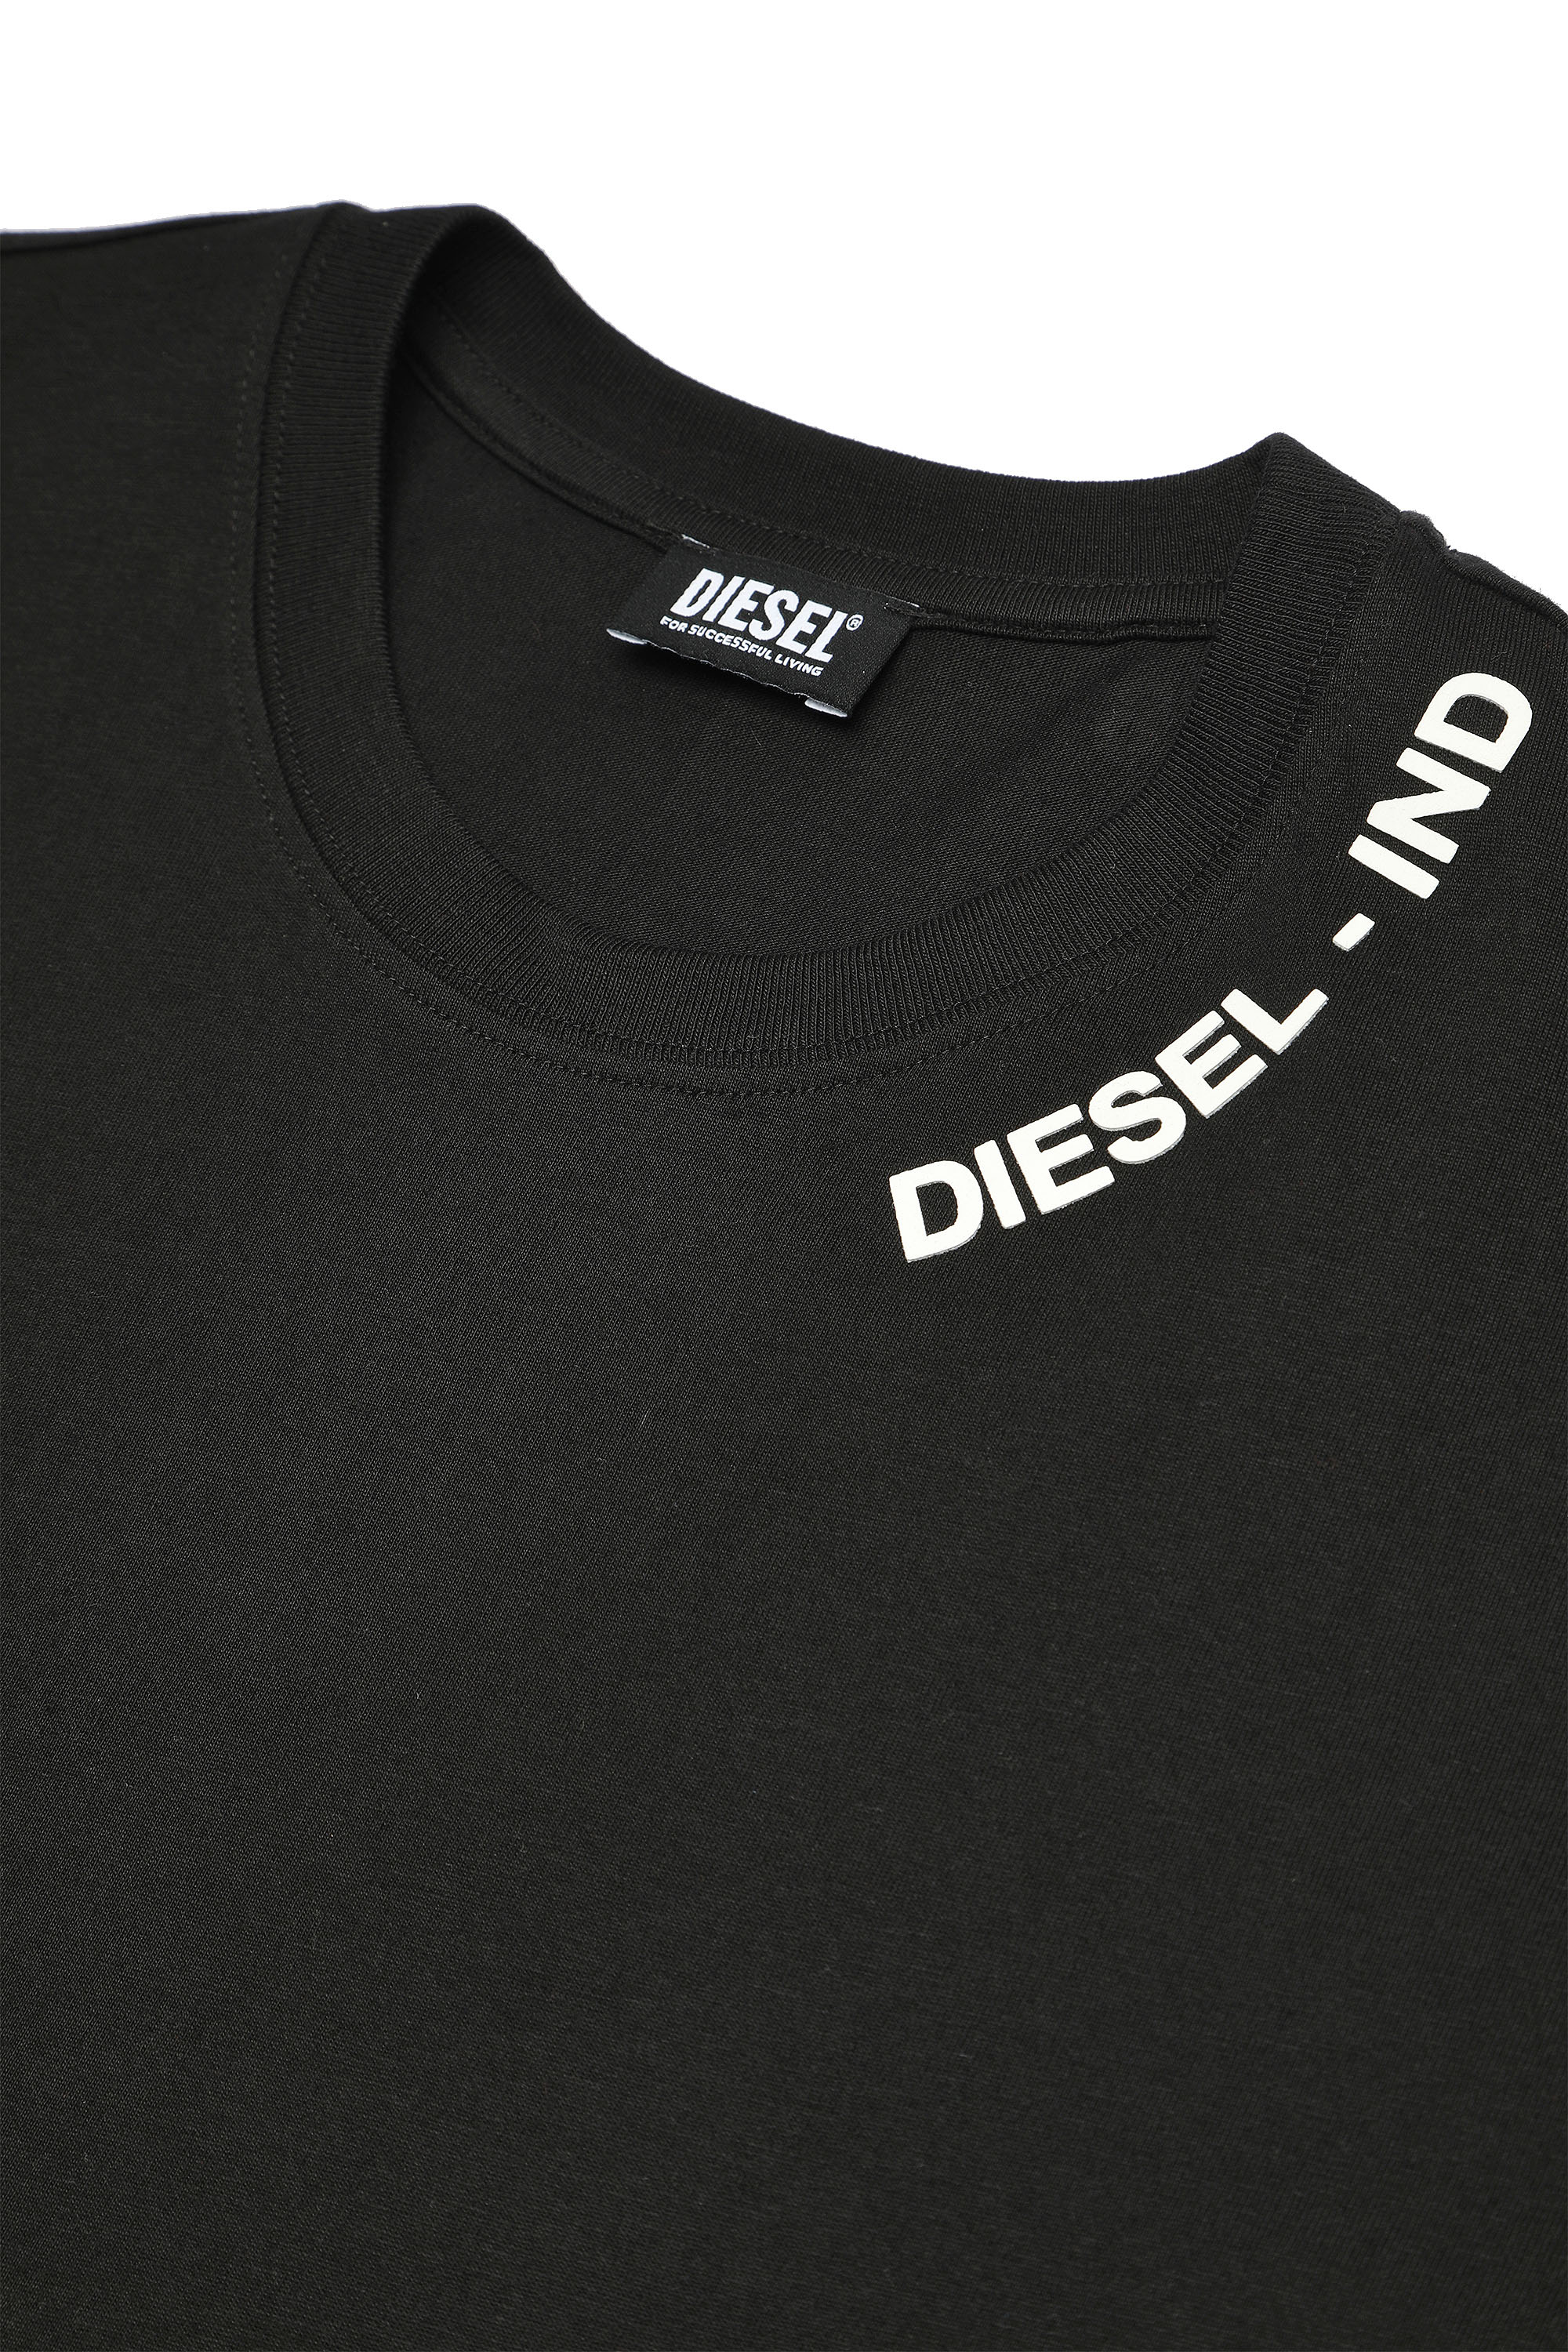 Diesel - UMSET-DIEGOLS-JULIOJ, Black - Image 4